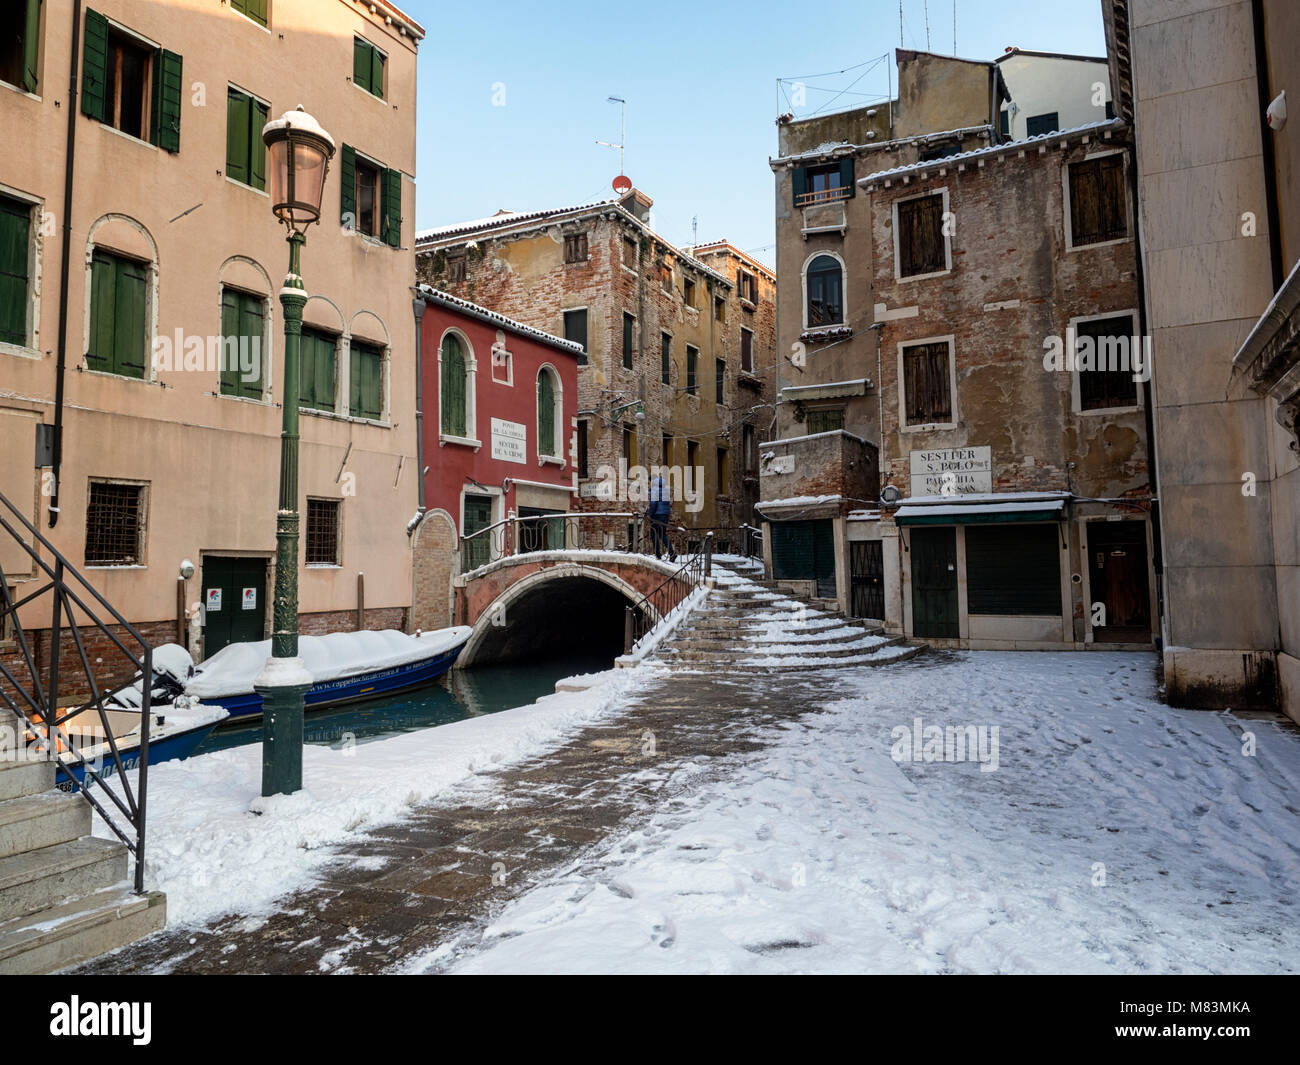 L'Italia, in inverno: neve a Venezia Foto Stock